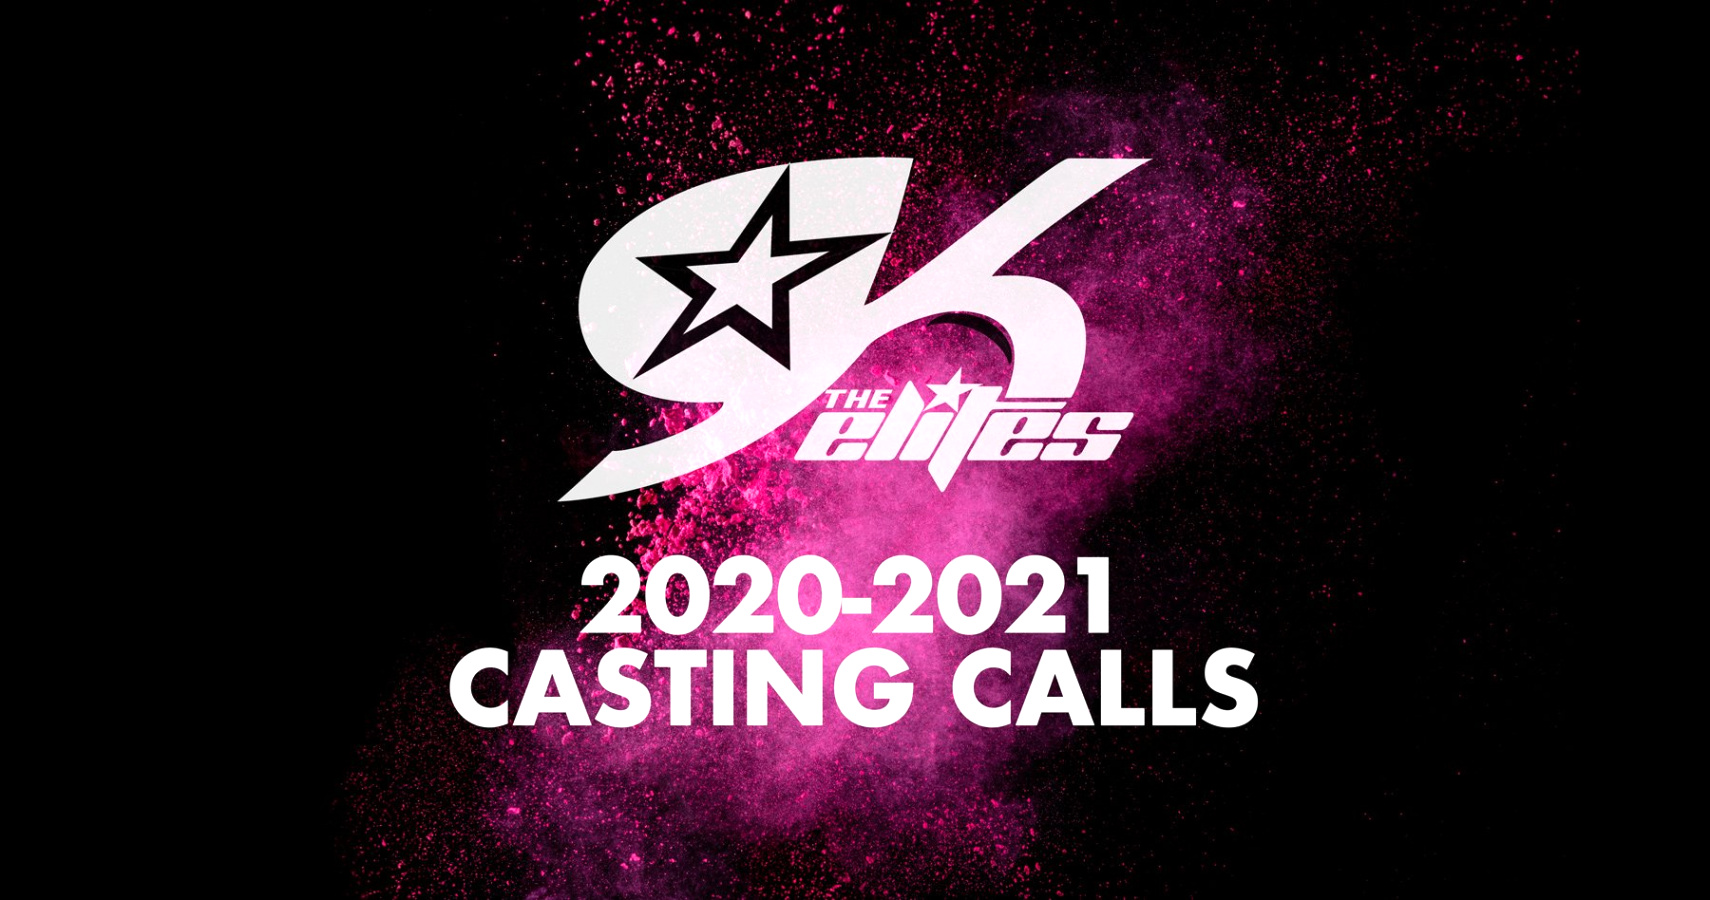 Vpn Services In Stephens Ga Dans the Gk Elites 2020-2021 Casting Calls